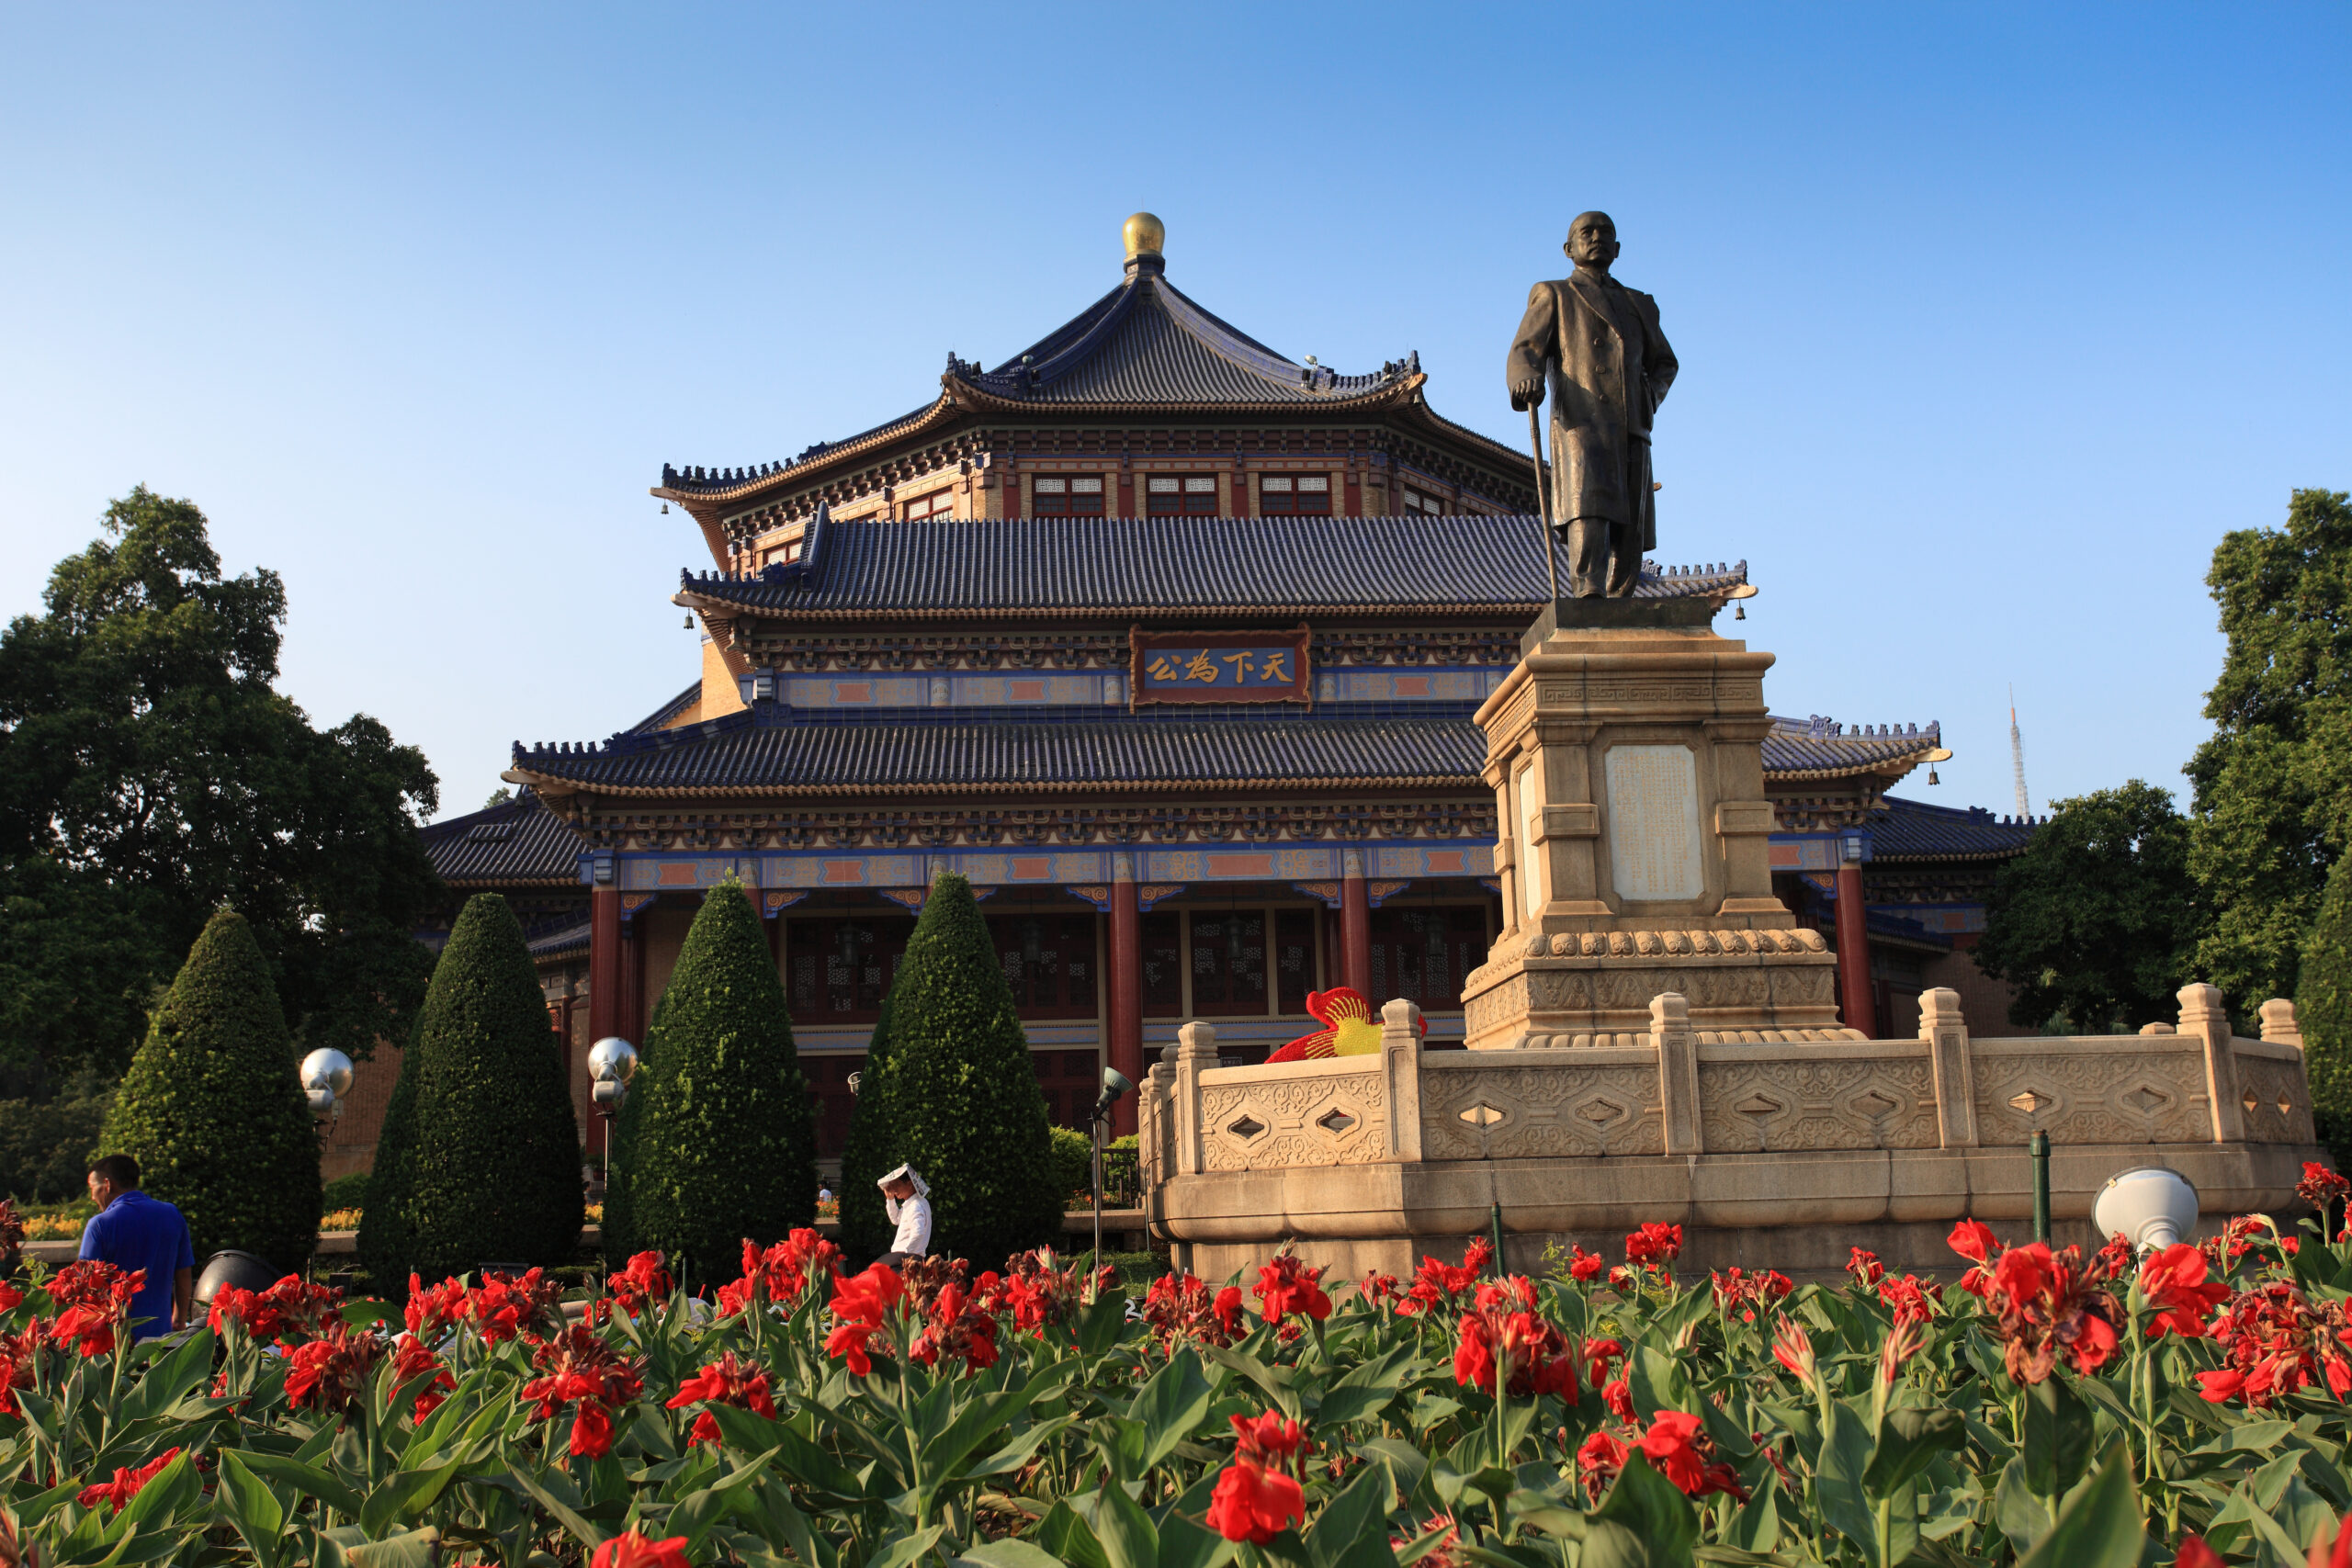 Sun Yat-sen Memorial Hall in Guangzhou, China